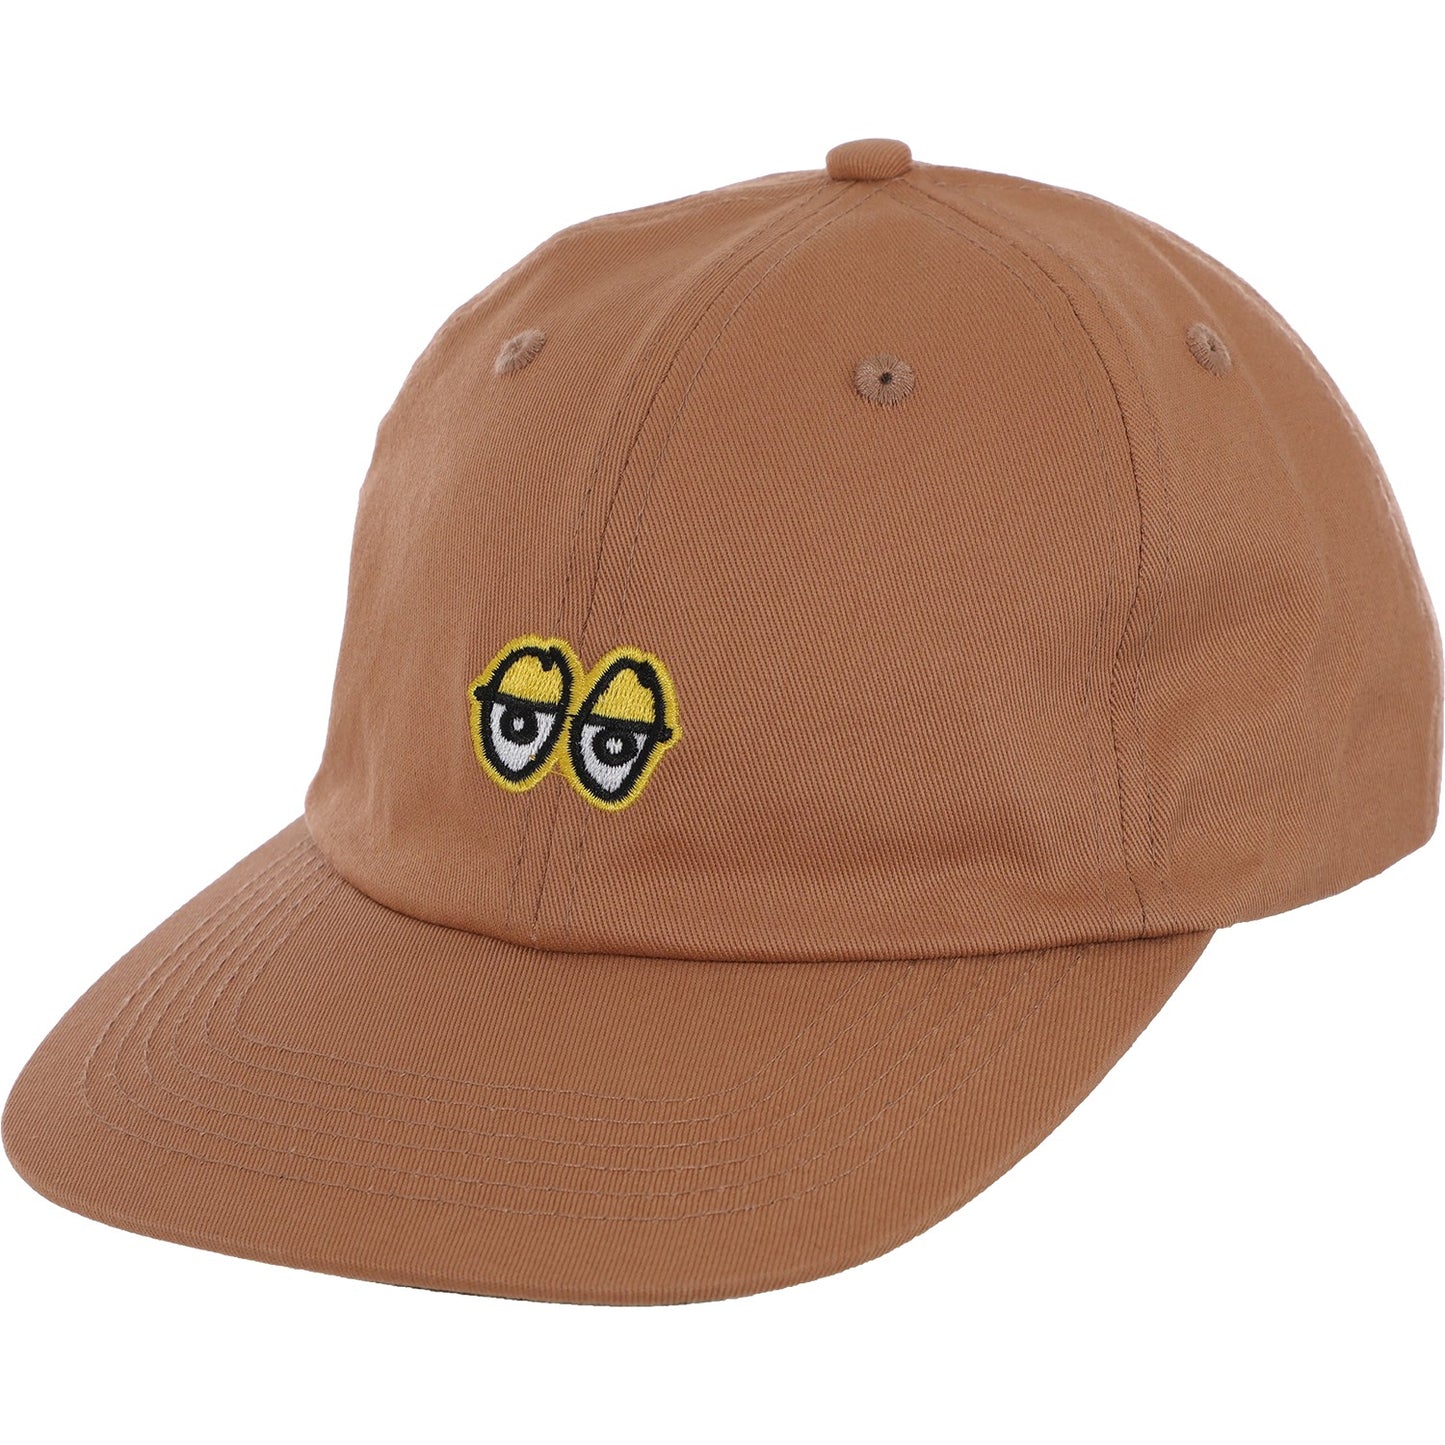 Eyes Adjustable Strapback Hat Tan/Gld OS